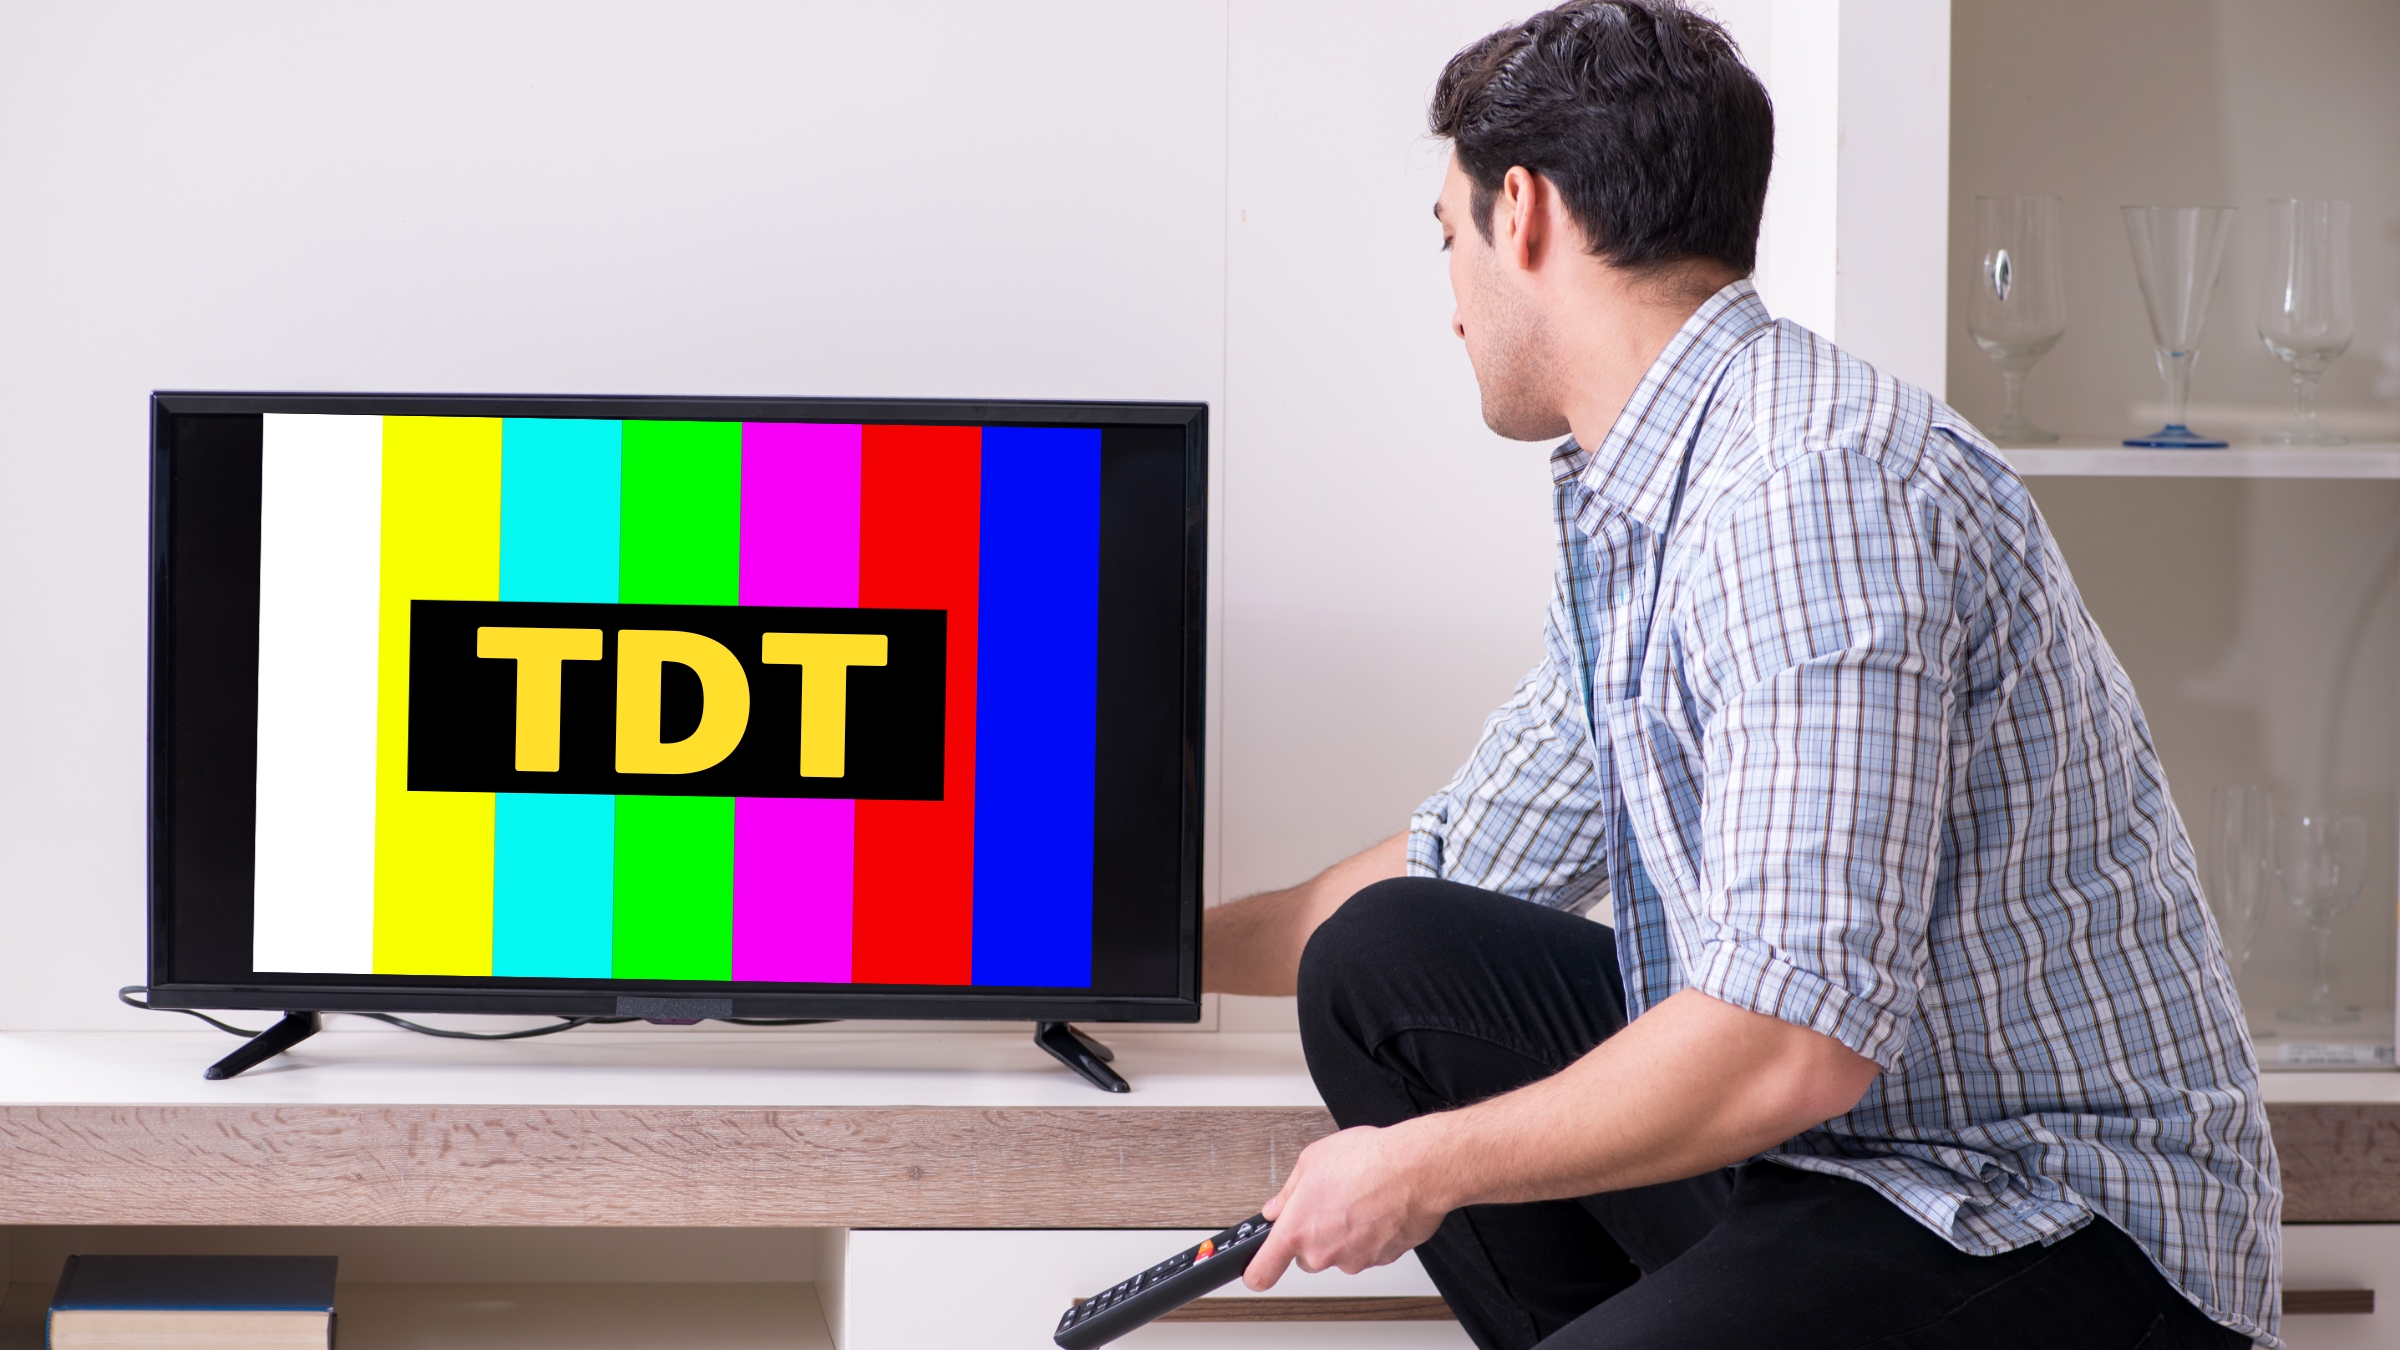 ATENCIÓN. Desde el 14 de febrero, la Televisión Digital Terrestre (TDT)  pasará exclusivamente a verse en alta definición (HD)